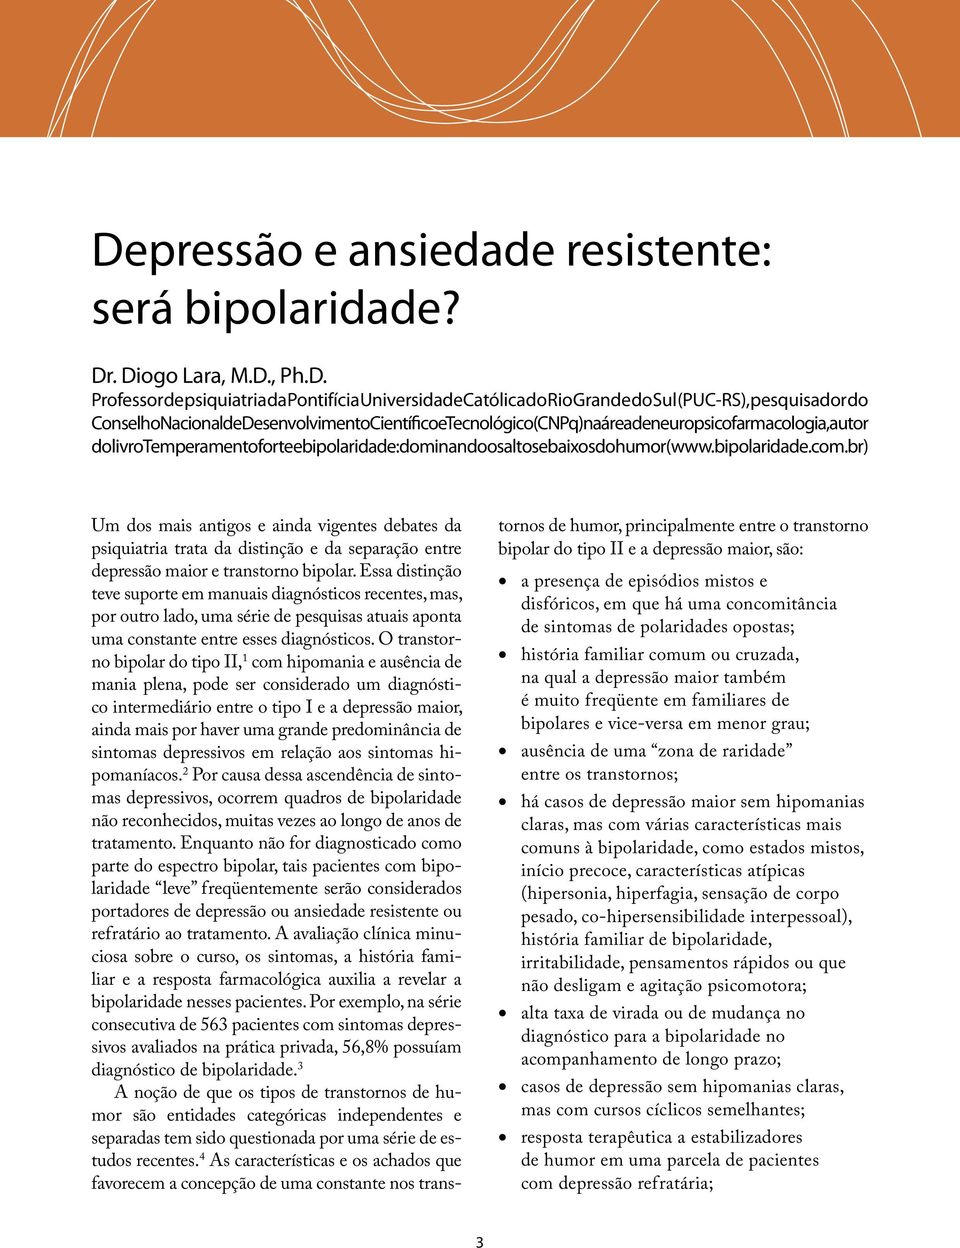 br) Um dos mais antigos e ainda vigentes debates da psiquiatria trata da distinção e da separação entre depressão maior e transtorno bipolar.